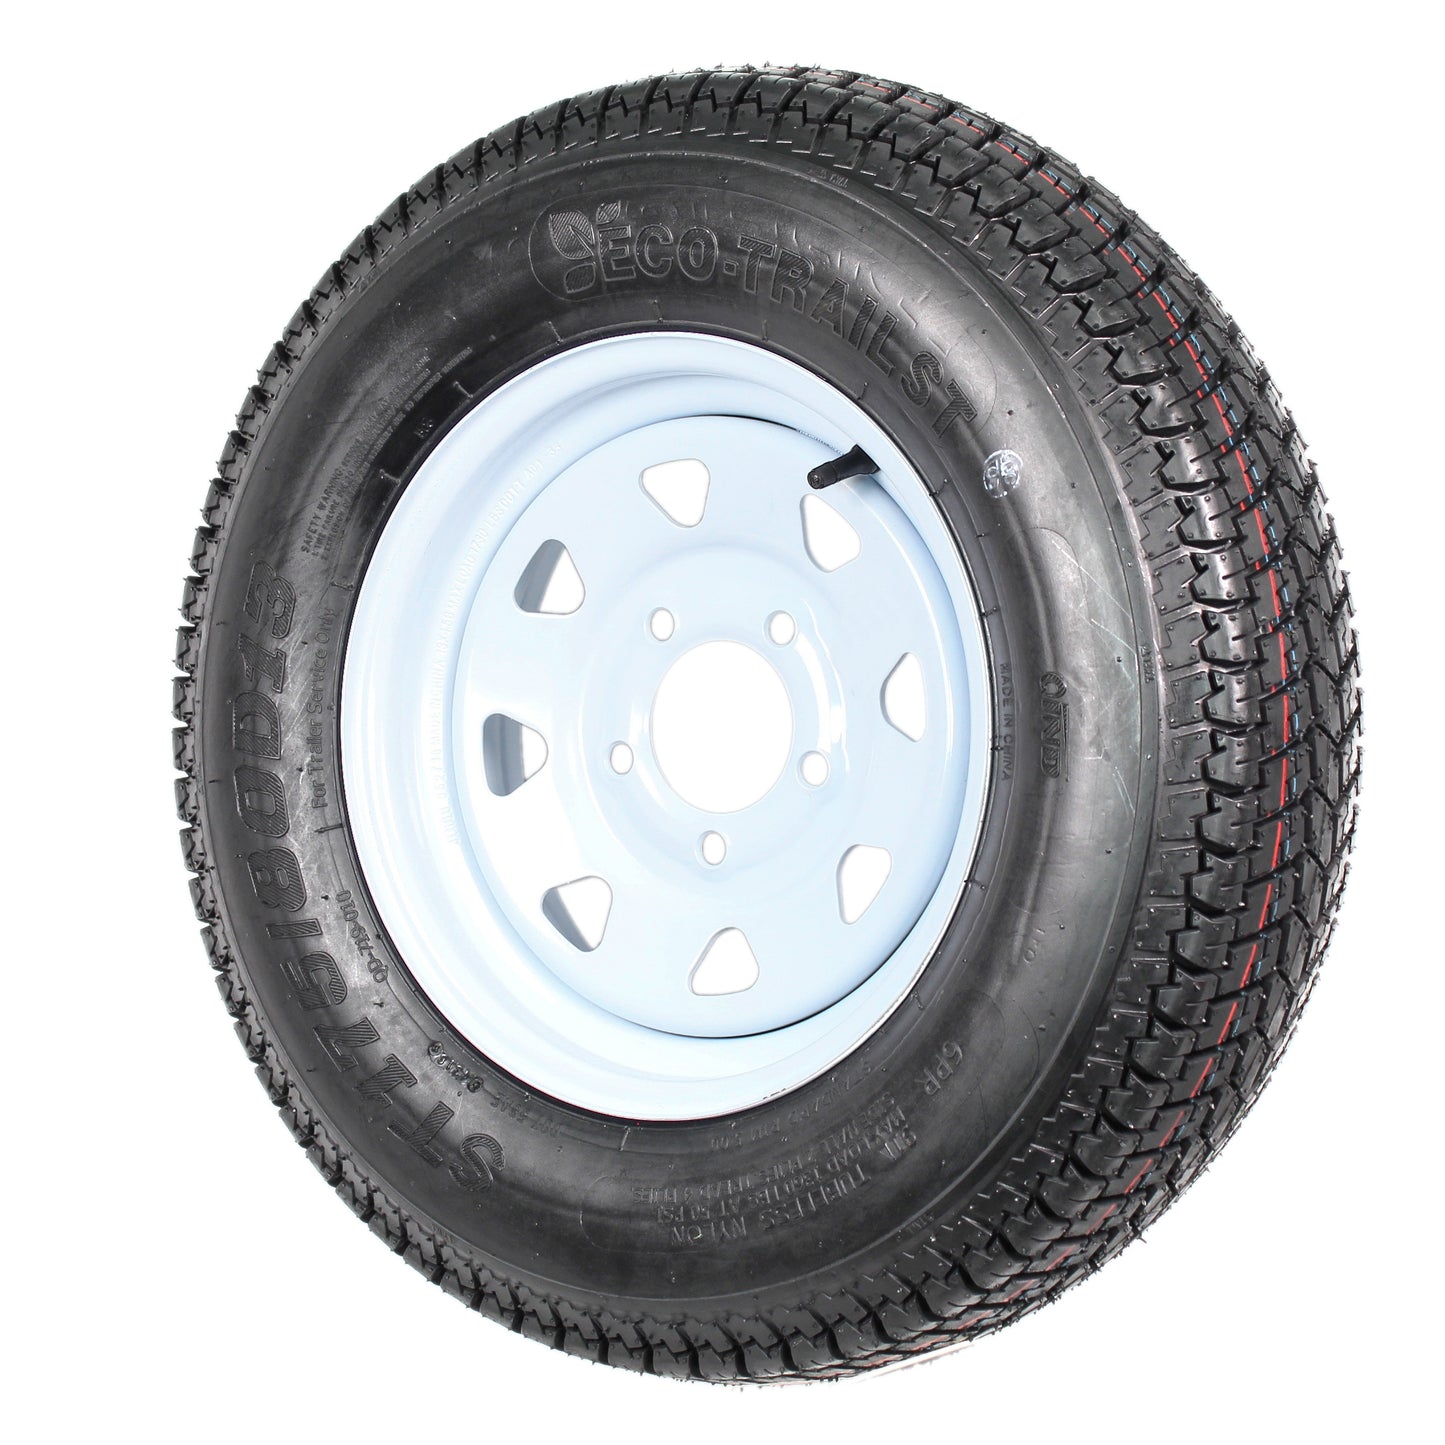 Eco Trailer Tire Rim ST175/80D13 175/80 B78-13 LRC 5 Lug Wheel White Spoke